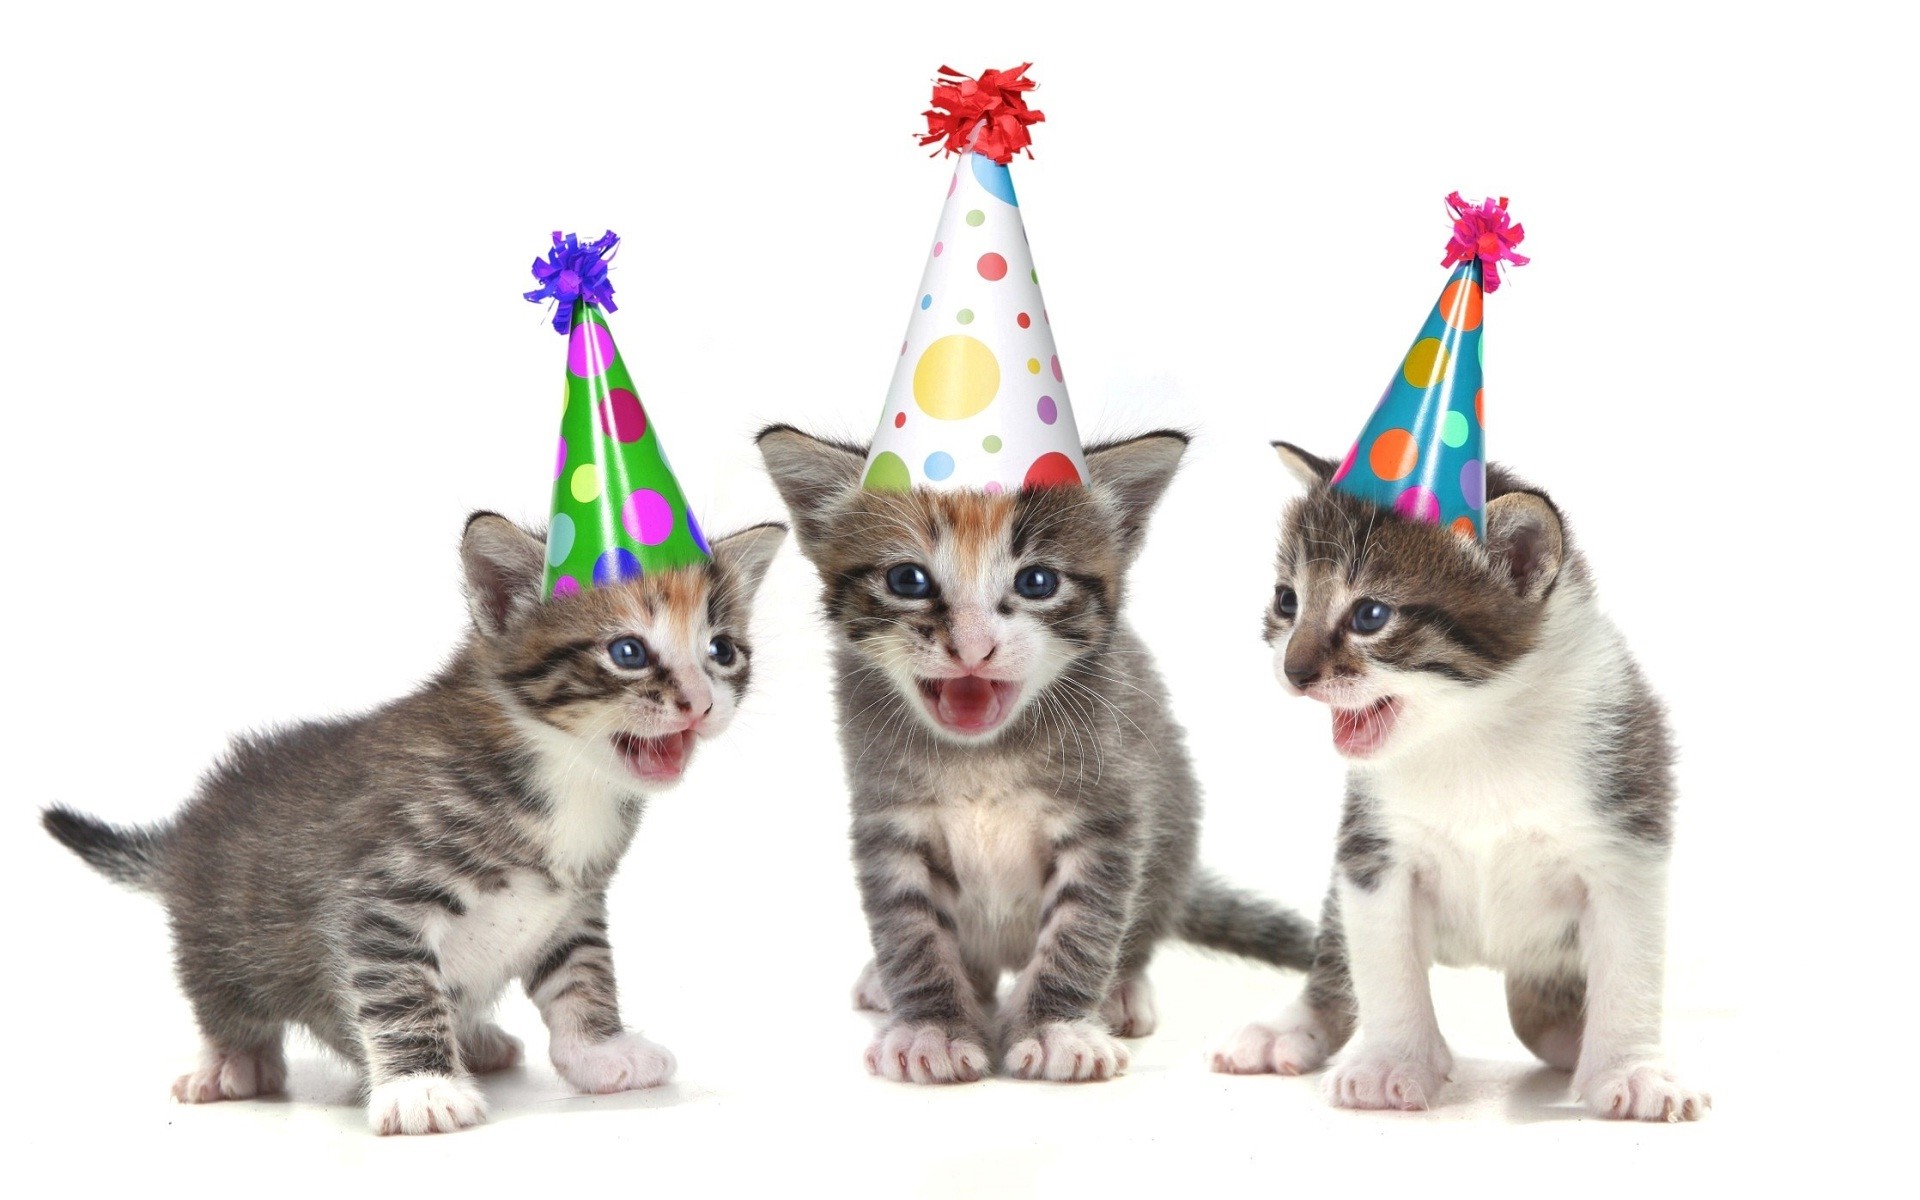 생일 축하 재미 벽지,고양이,중소형 고양이,felidae,고양이 새끼,미국의 와이어 헤어